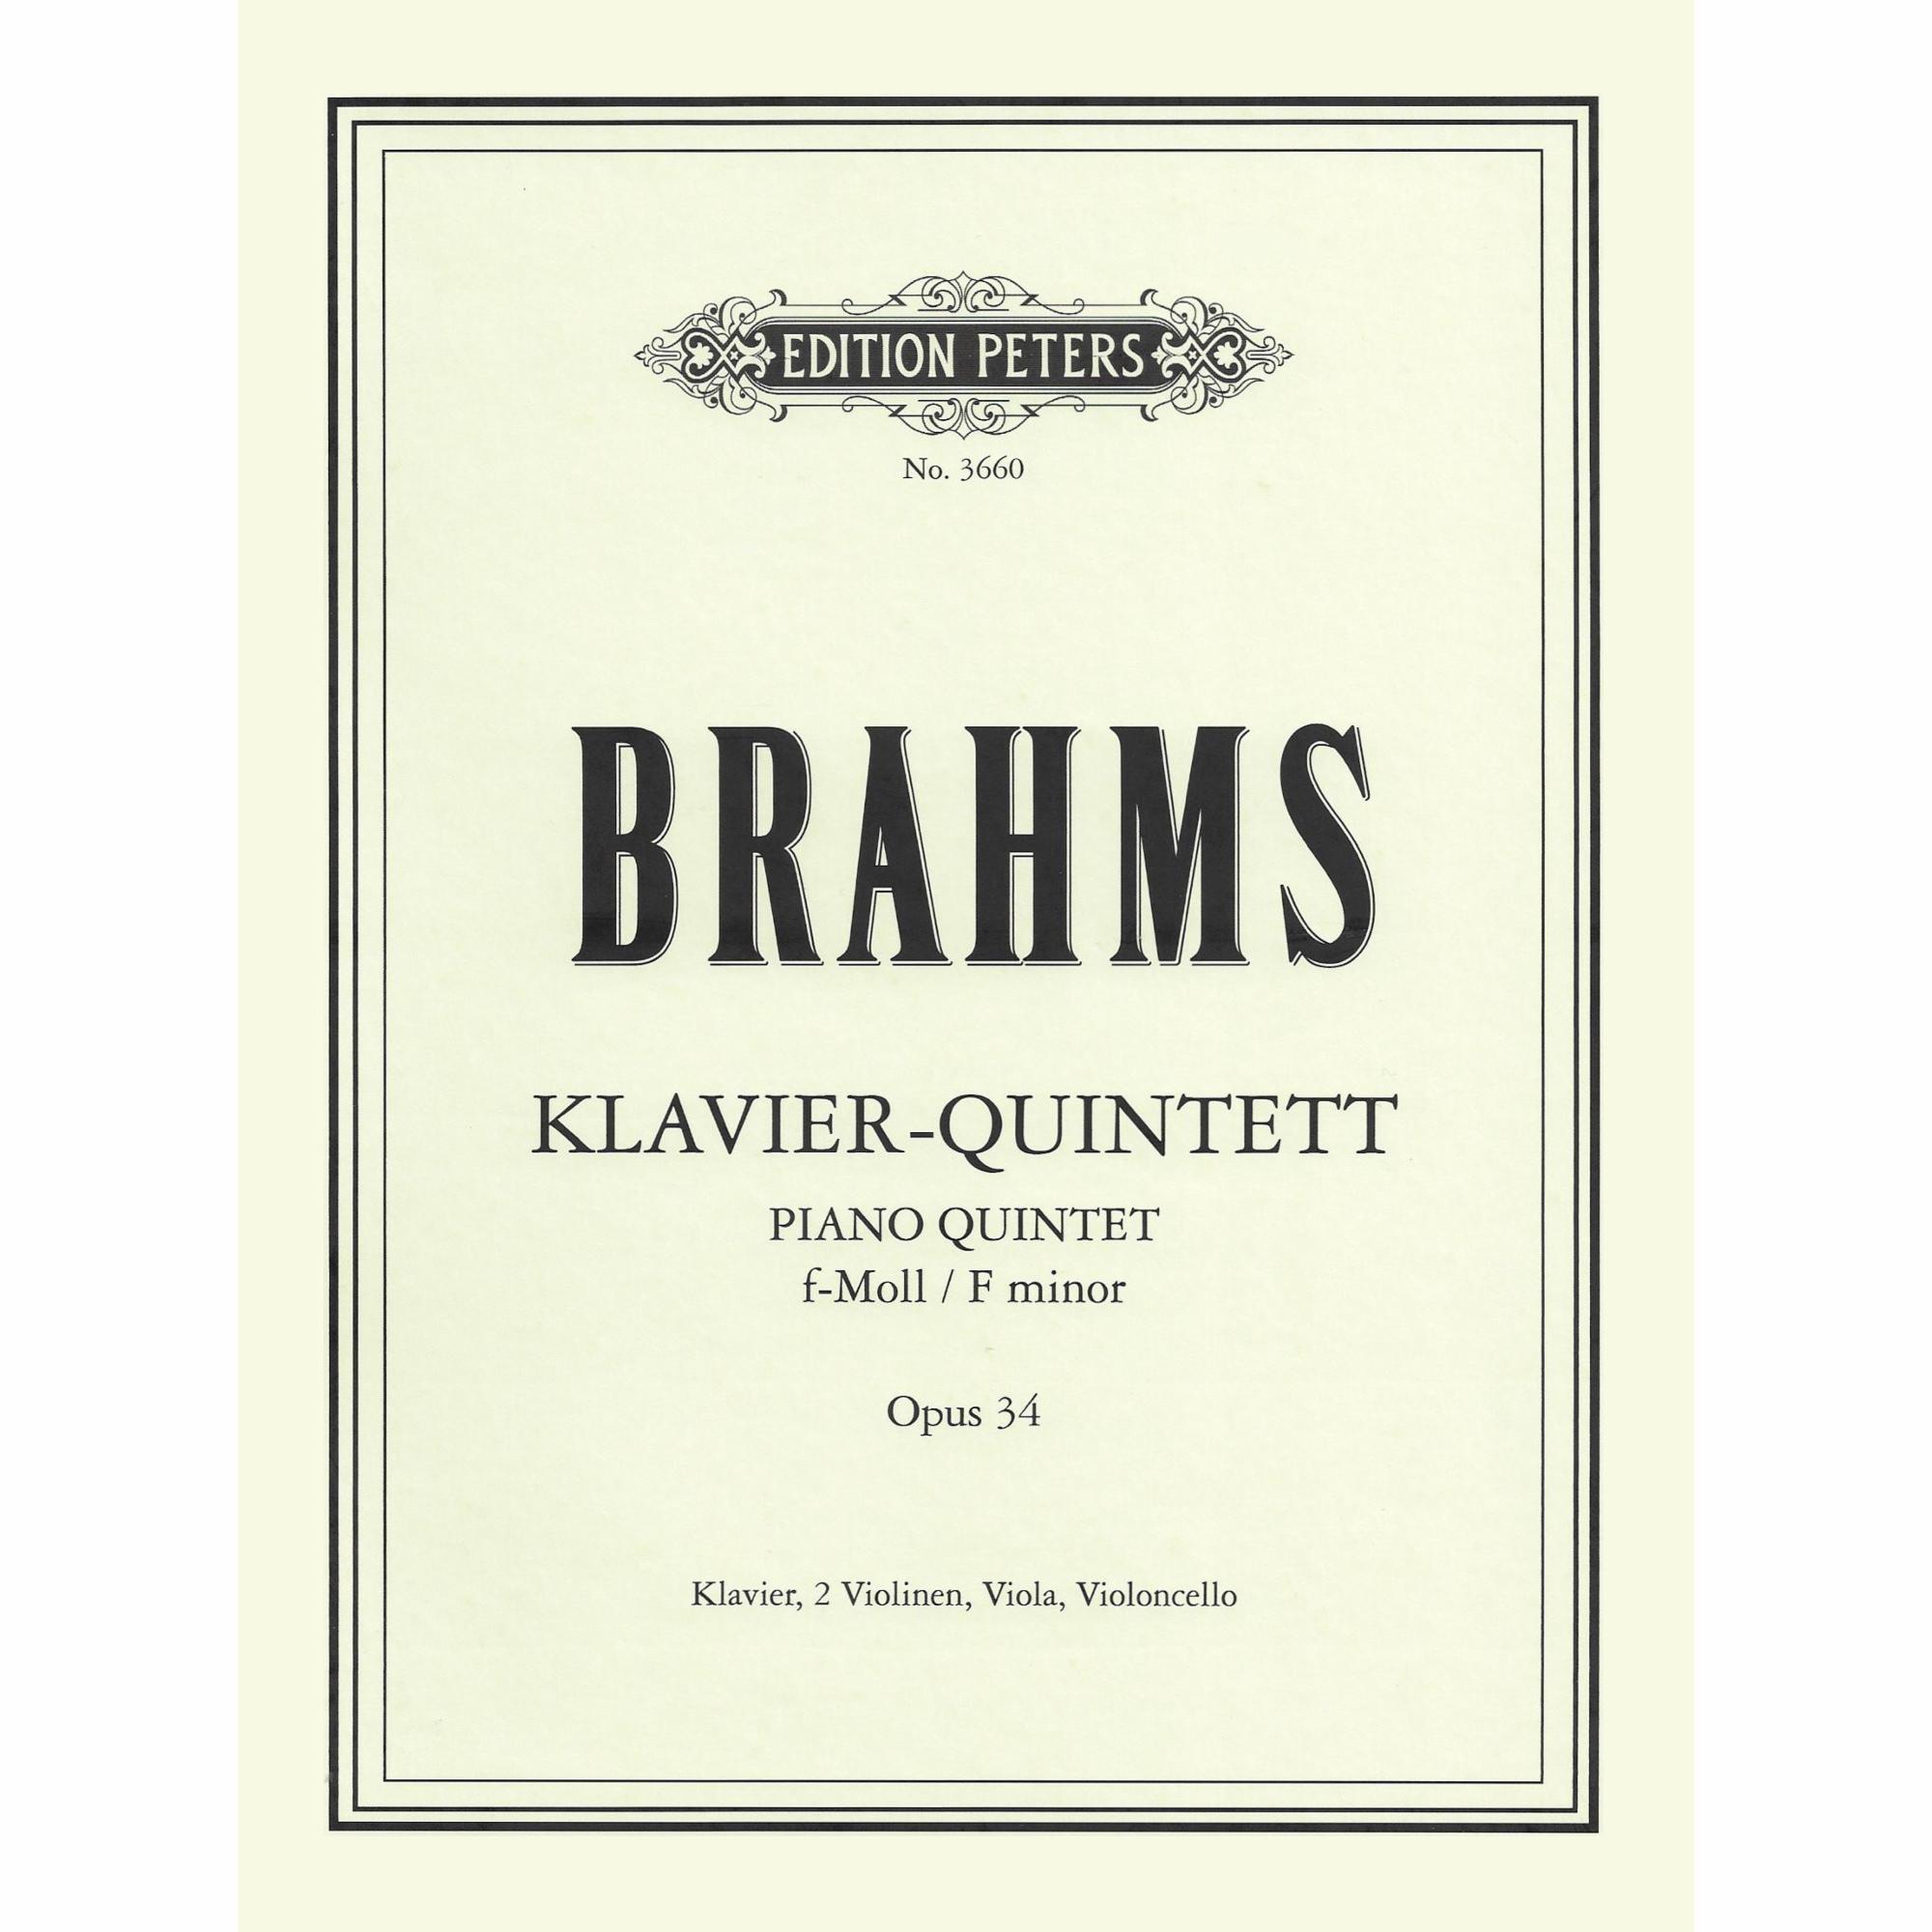 Brahms -- Piano Quintet in F Minor, Op. 34